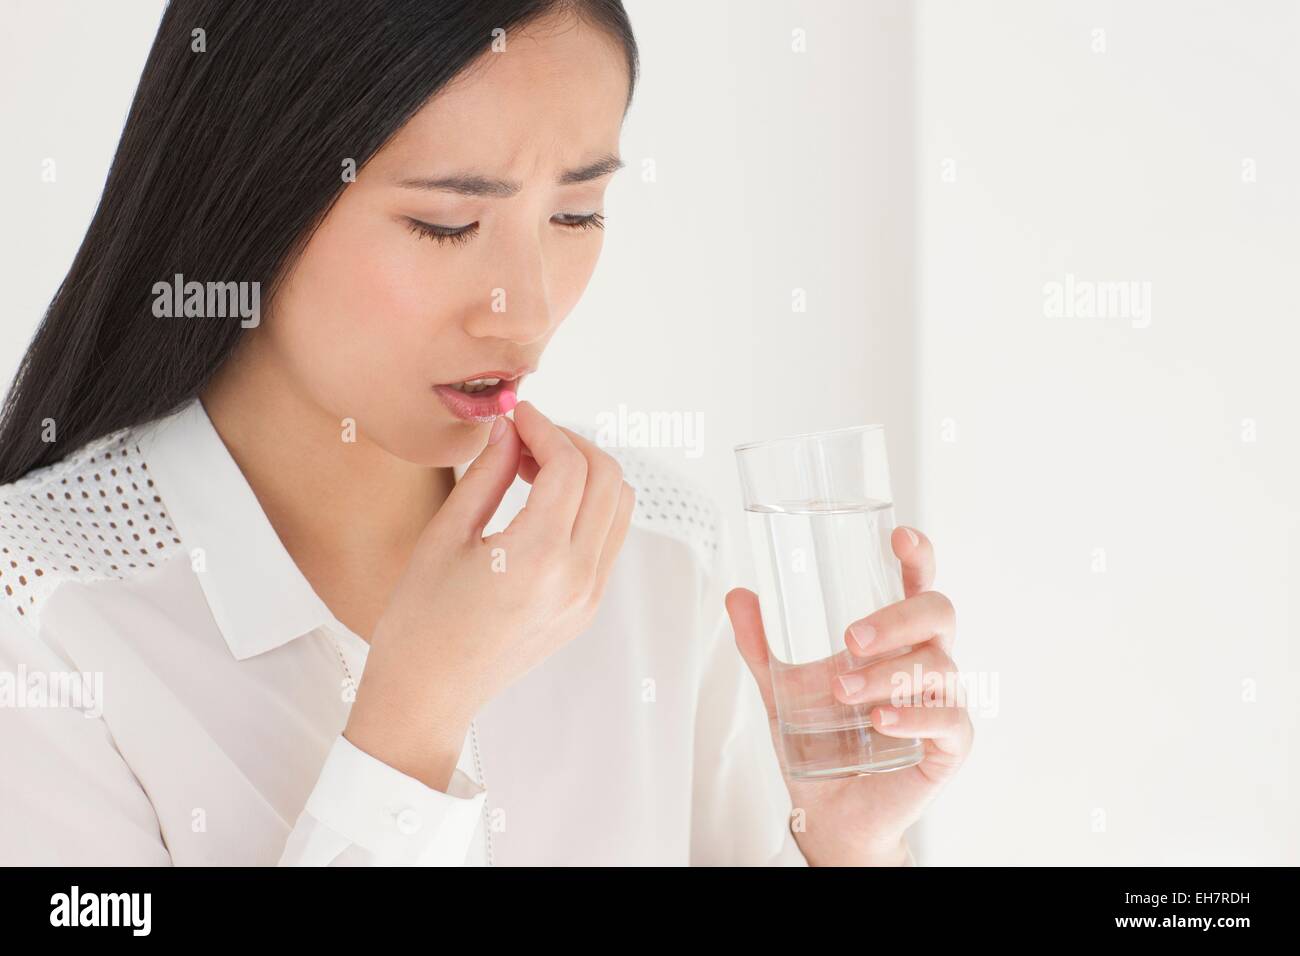 Woman taking painkiller Stock Photo